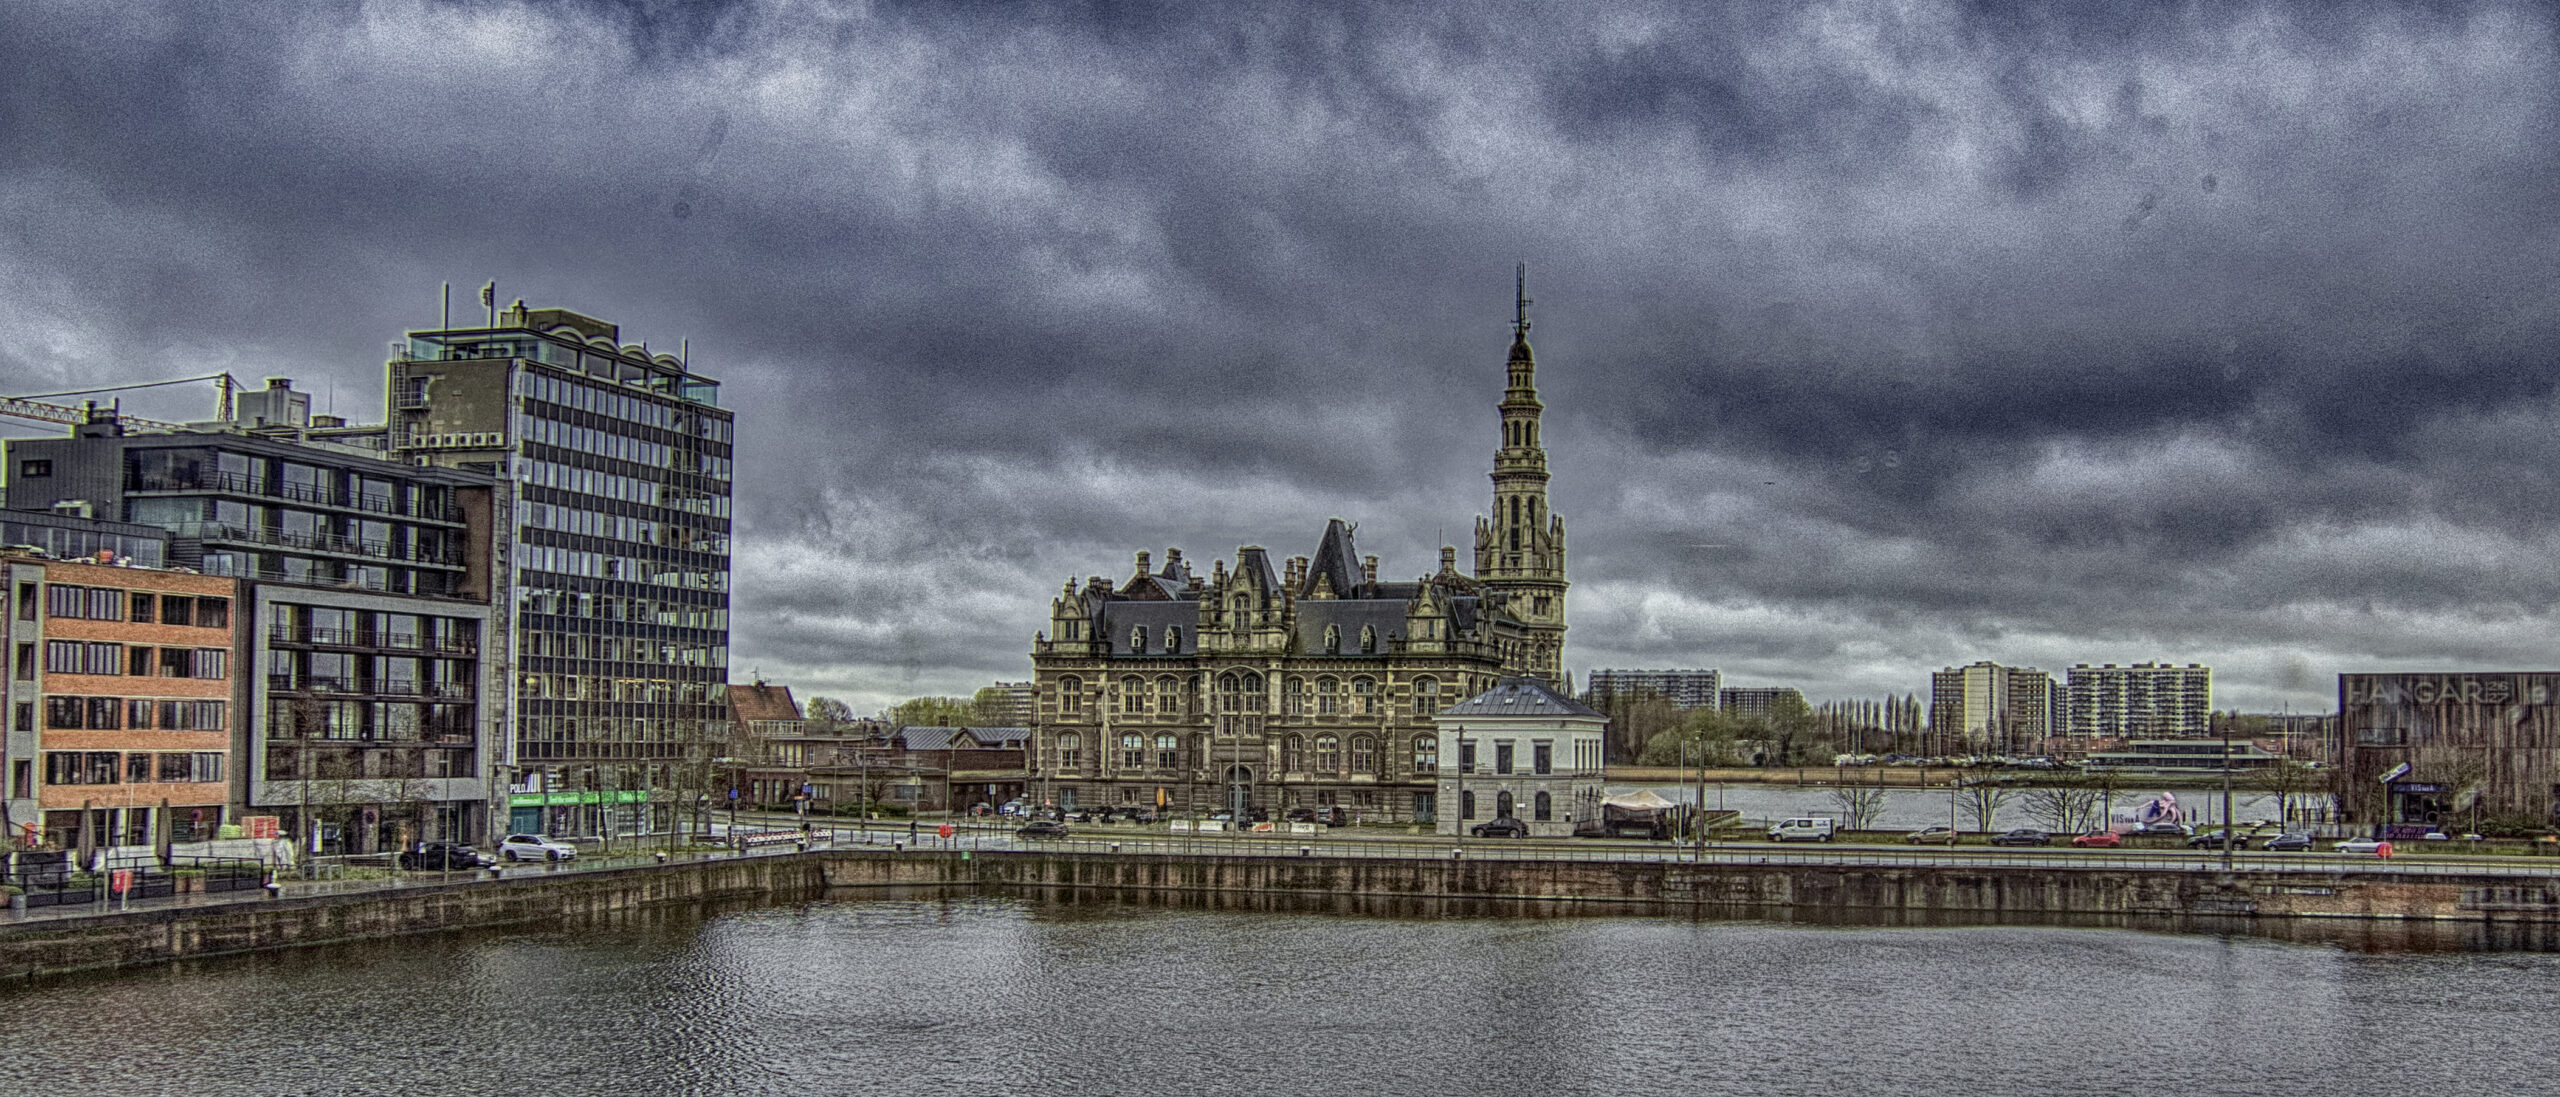 The government offices of Loodswezen in Antwerp, Belgium